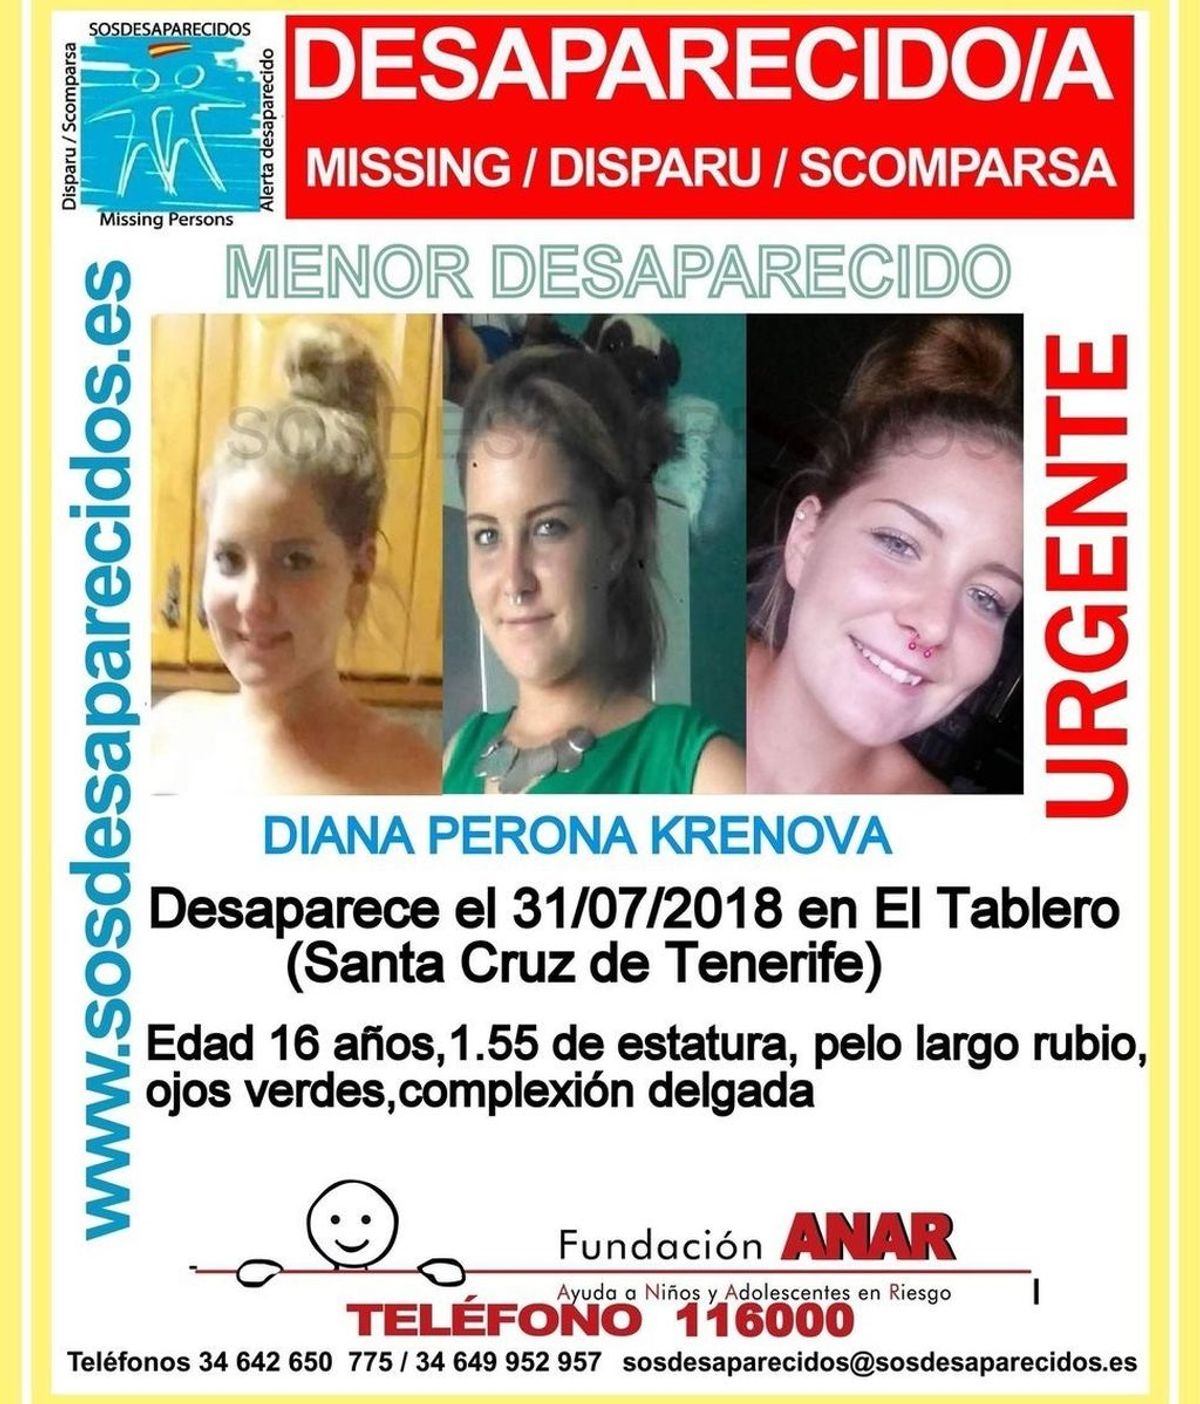 Desaparecida en Tenerifer Diana Perona Krenova, una menor de 16 años